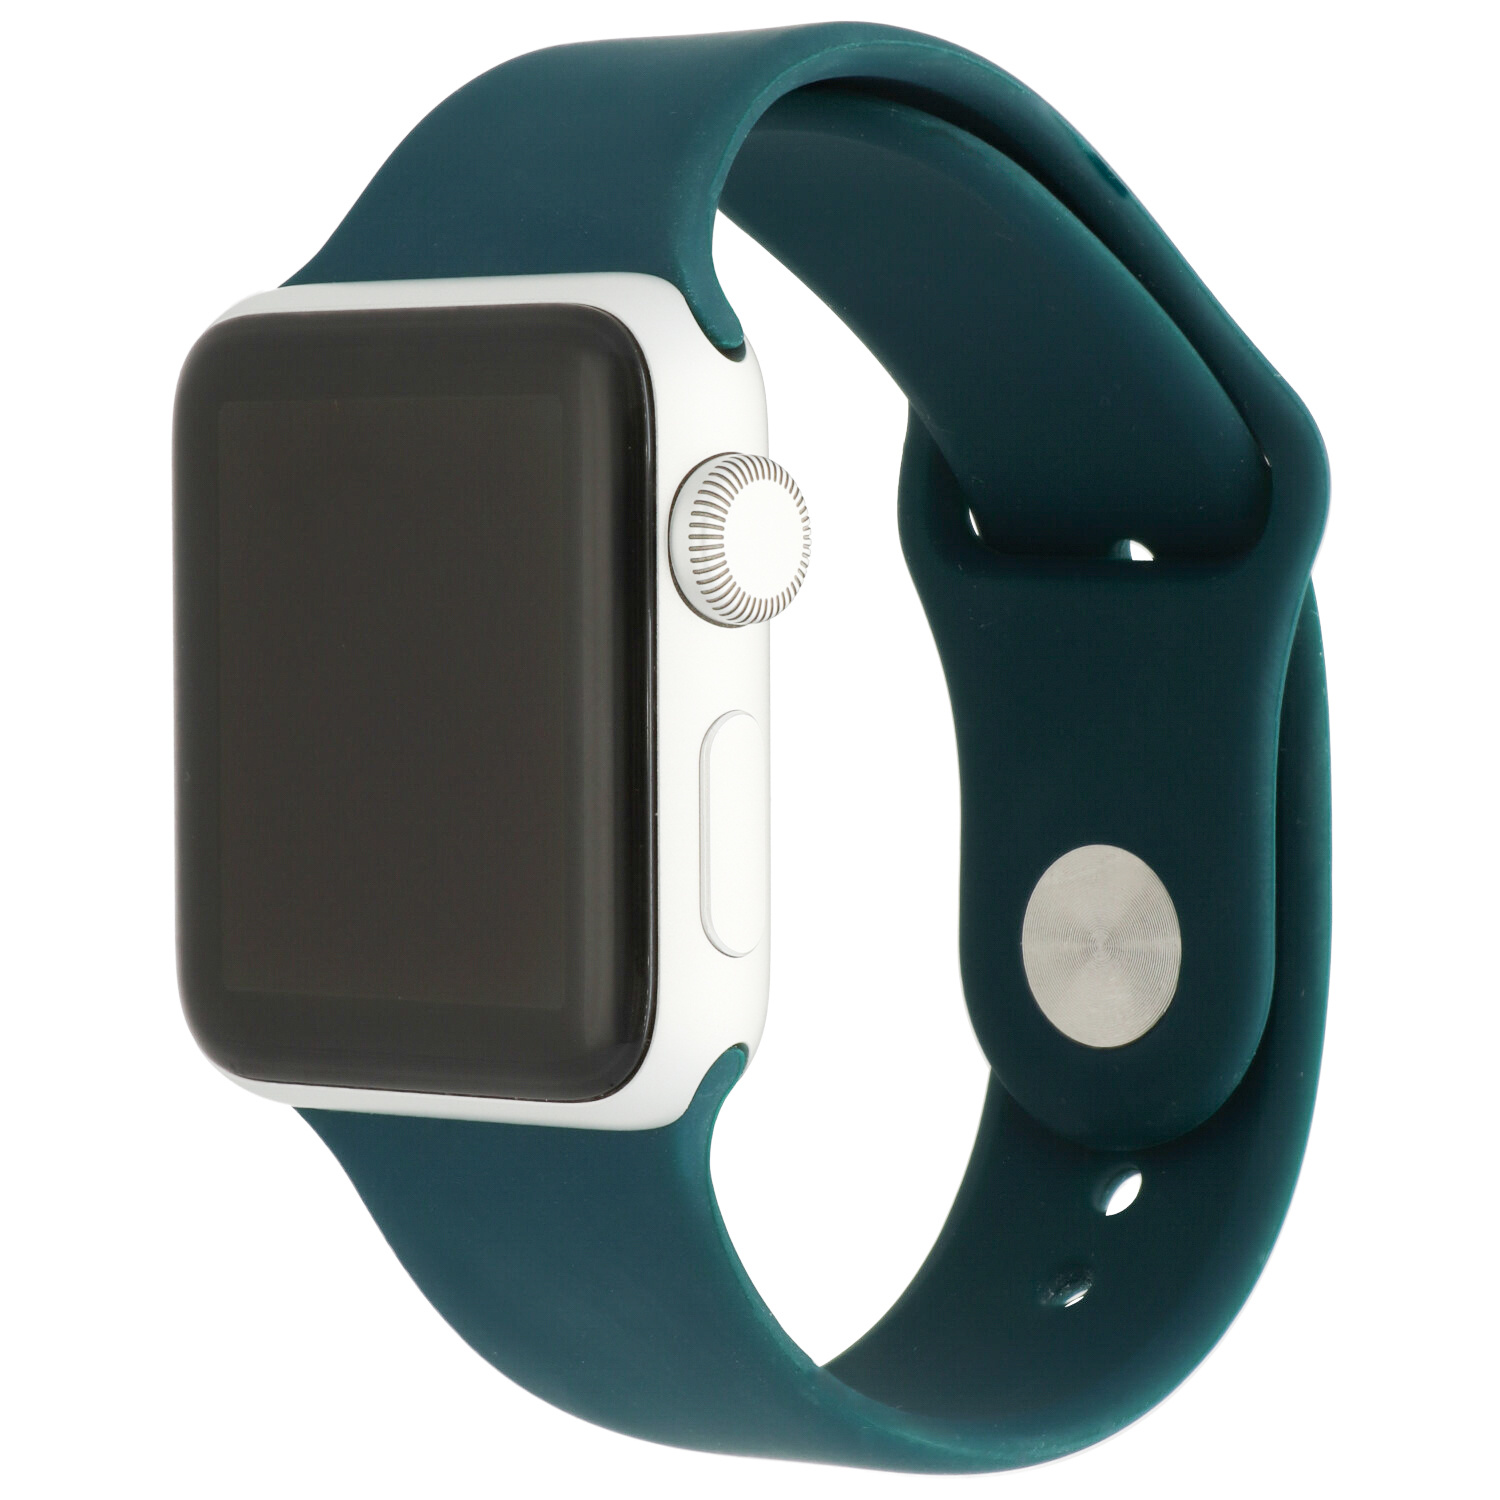  Apple Watch sport pánt - sötétzöld